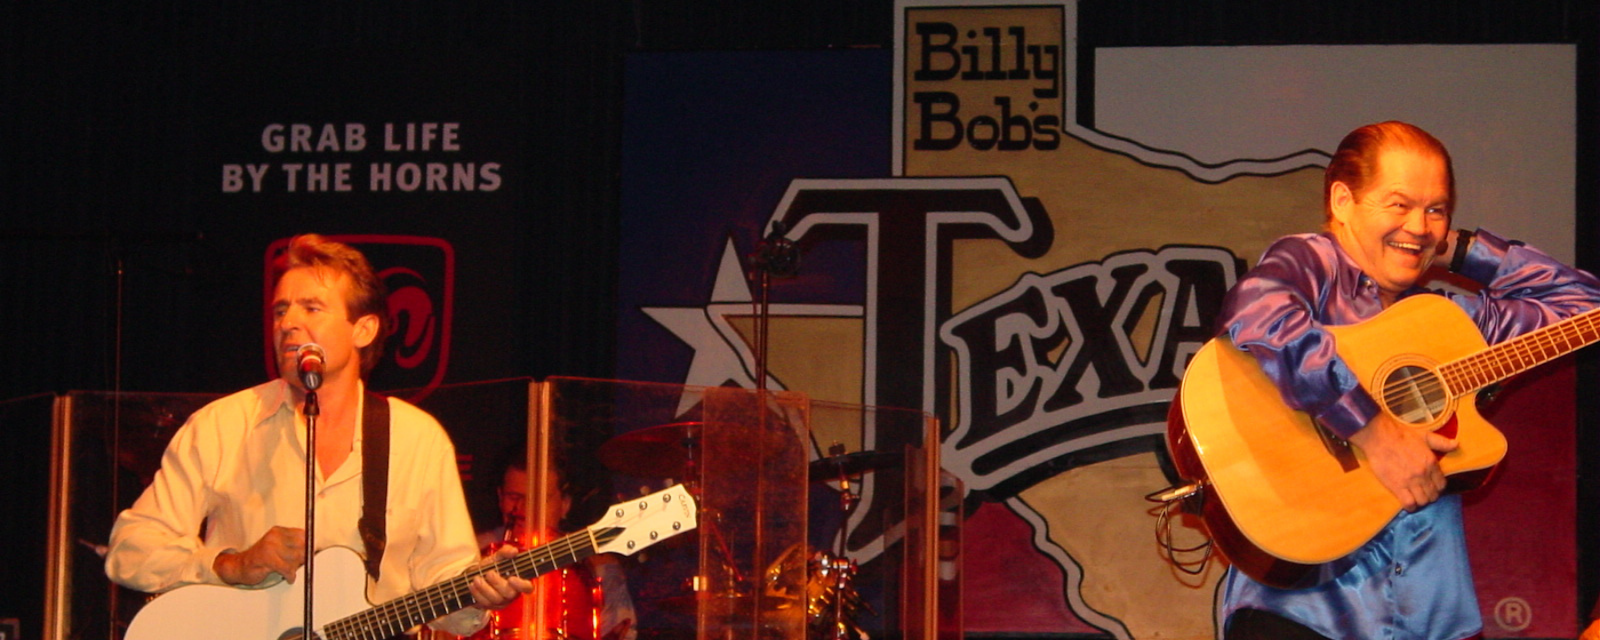 Solo haz póngase en fila ir a buscar The Monkees - Billy Bob's Texas